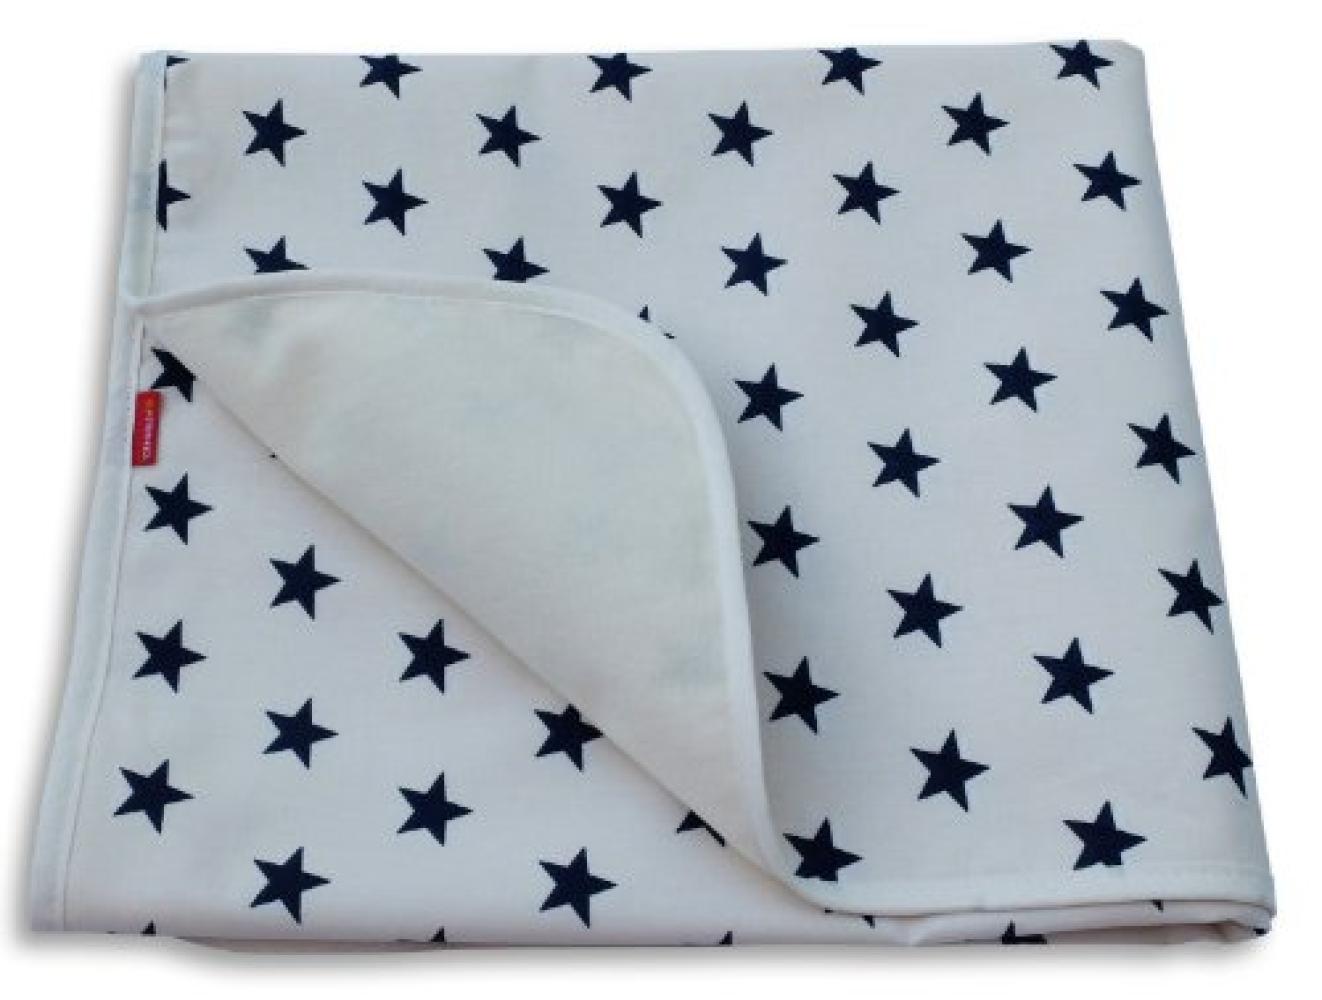 Ideenreich 'Sterne' Babydecke weiß/blau 70x90 cm Bild 1